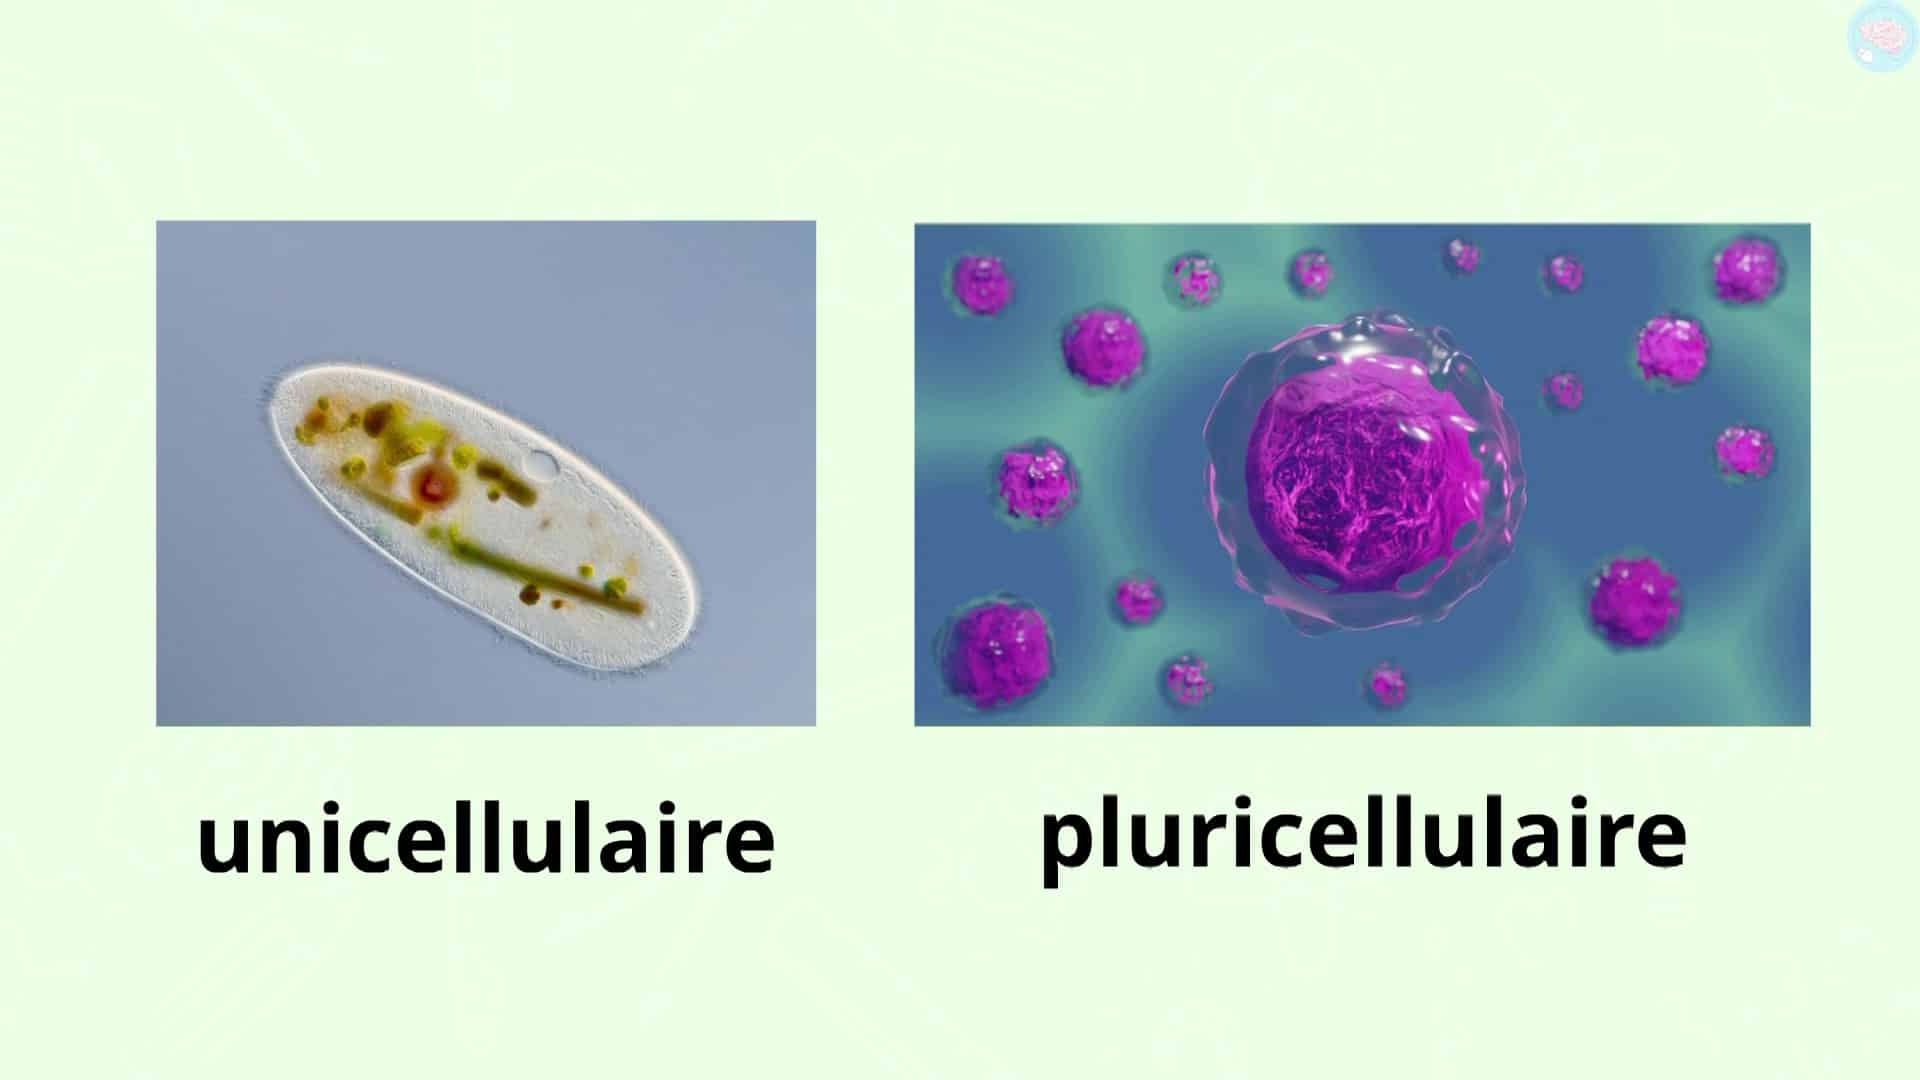 un être vivant unicellulaire et pluricellulaire